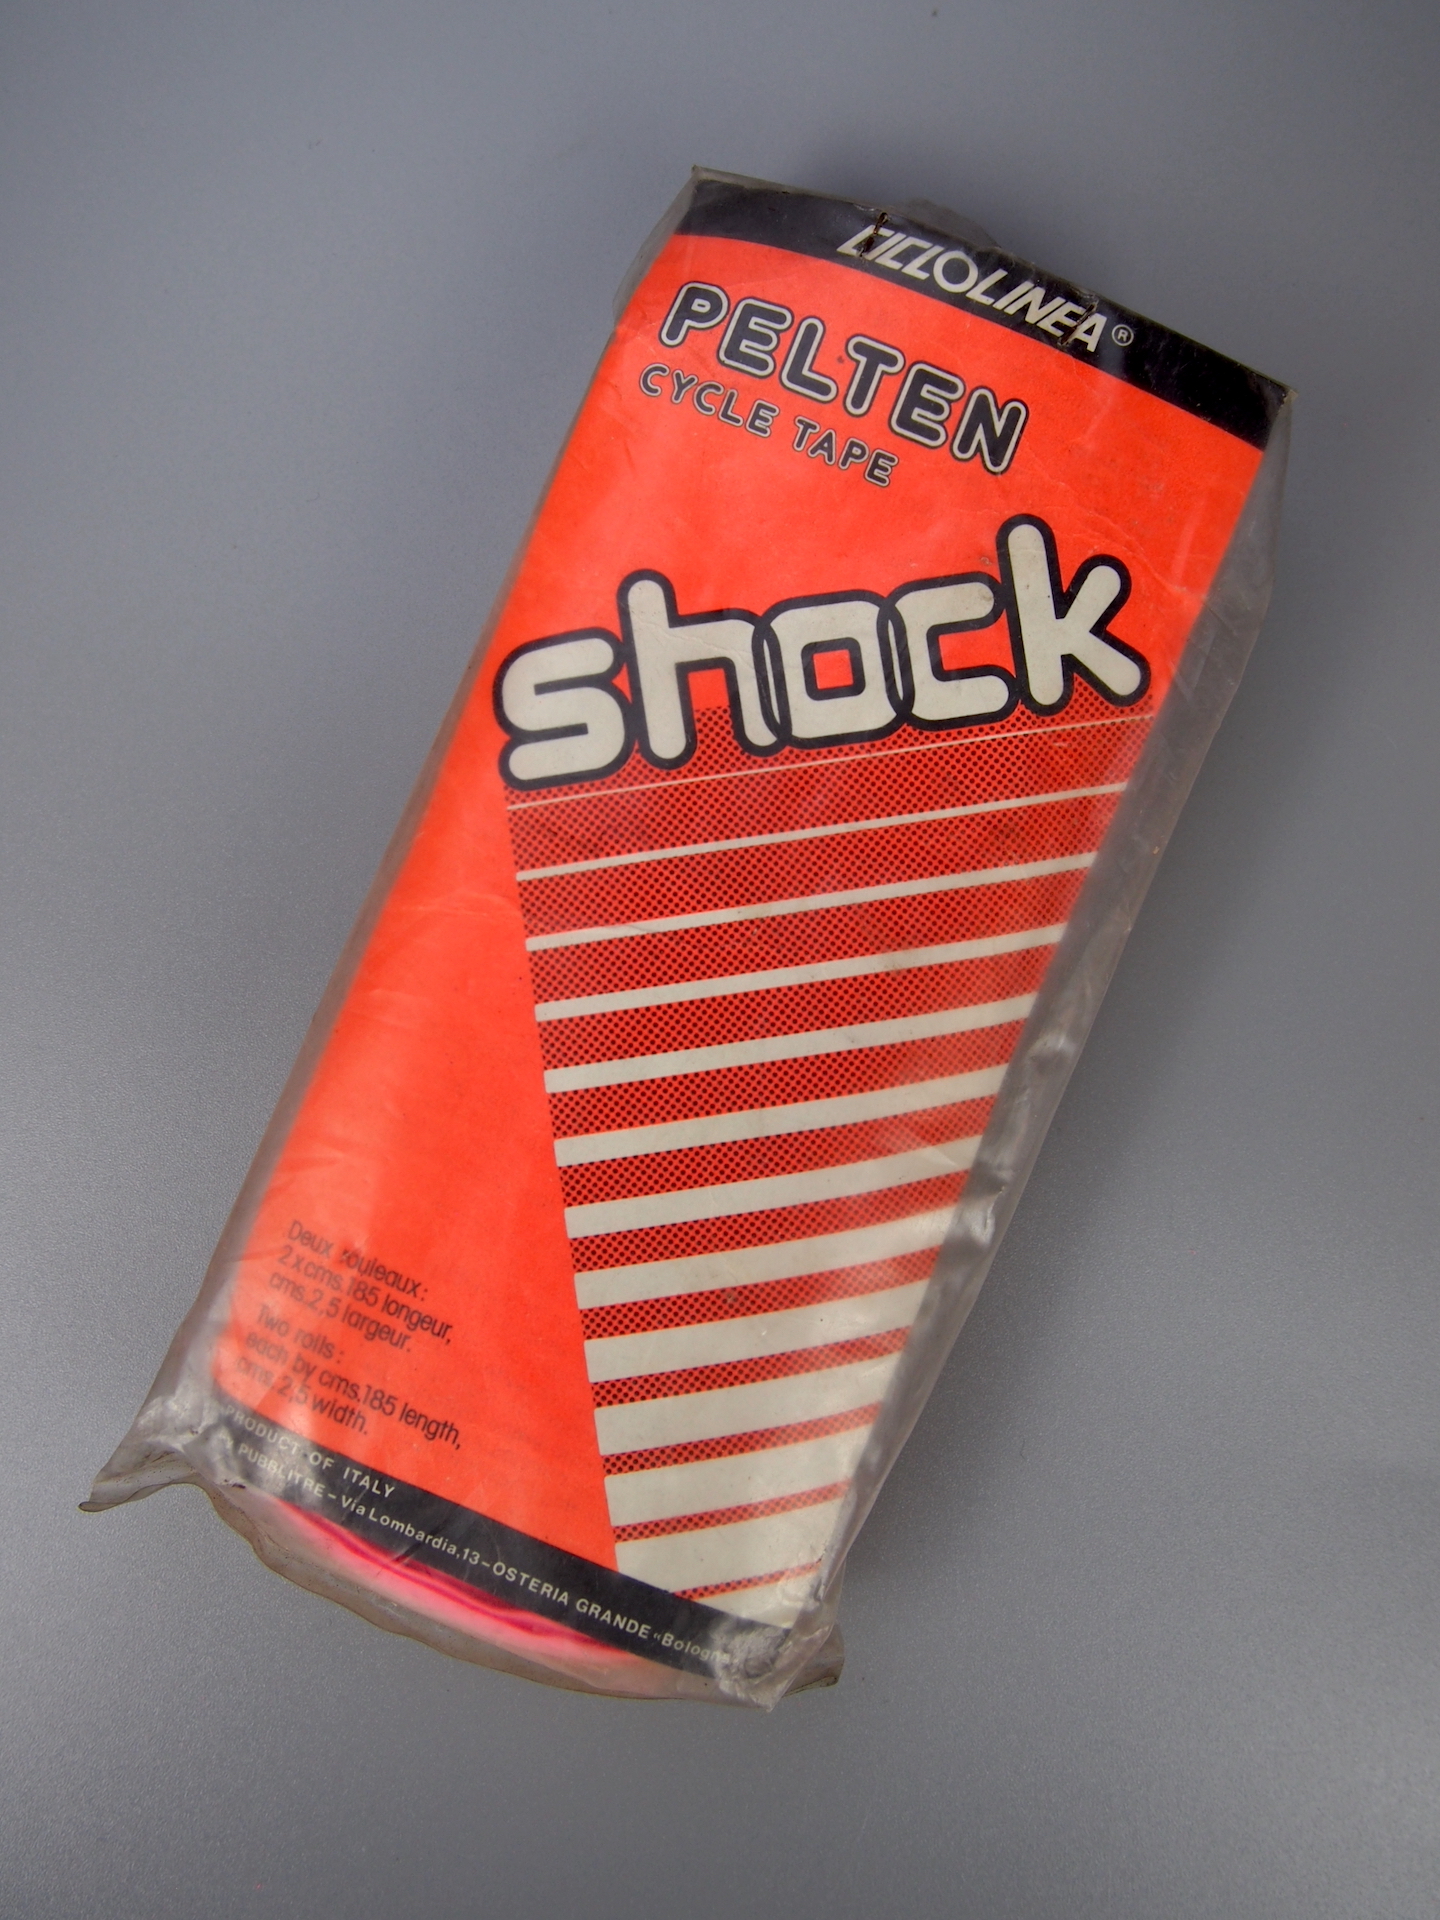 Ciclolinea Pelten 'Shock' bar tape – Neon Pink